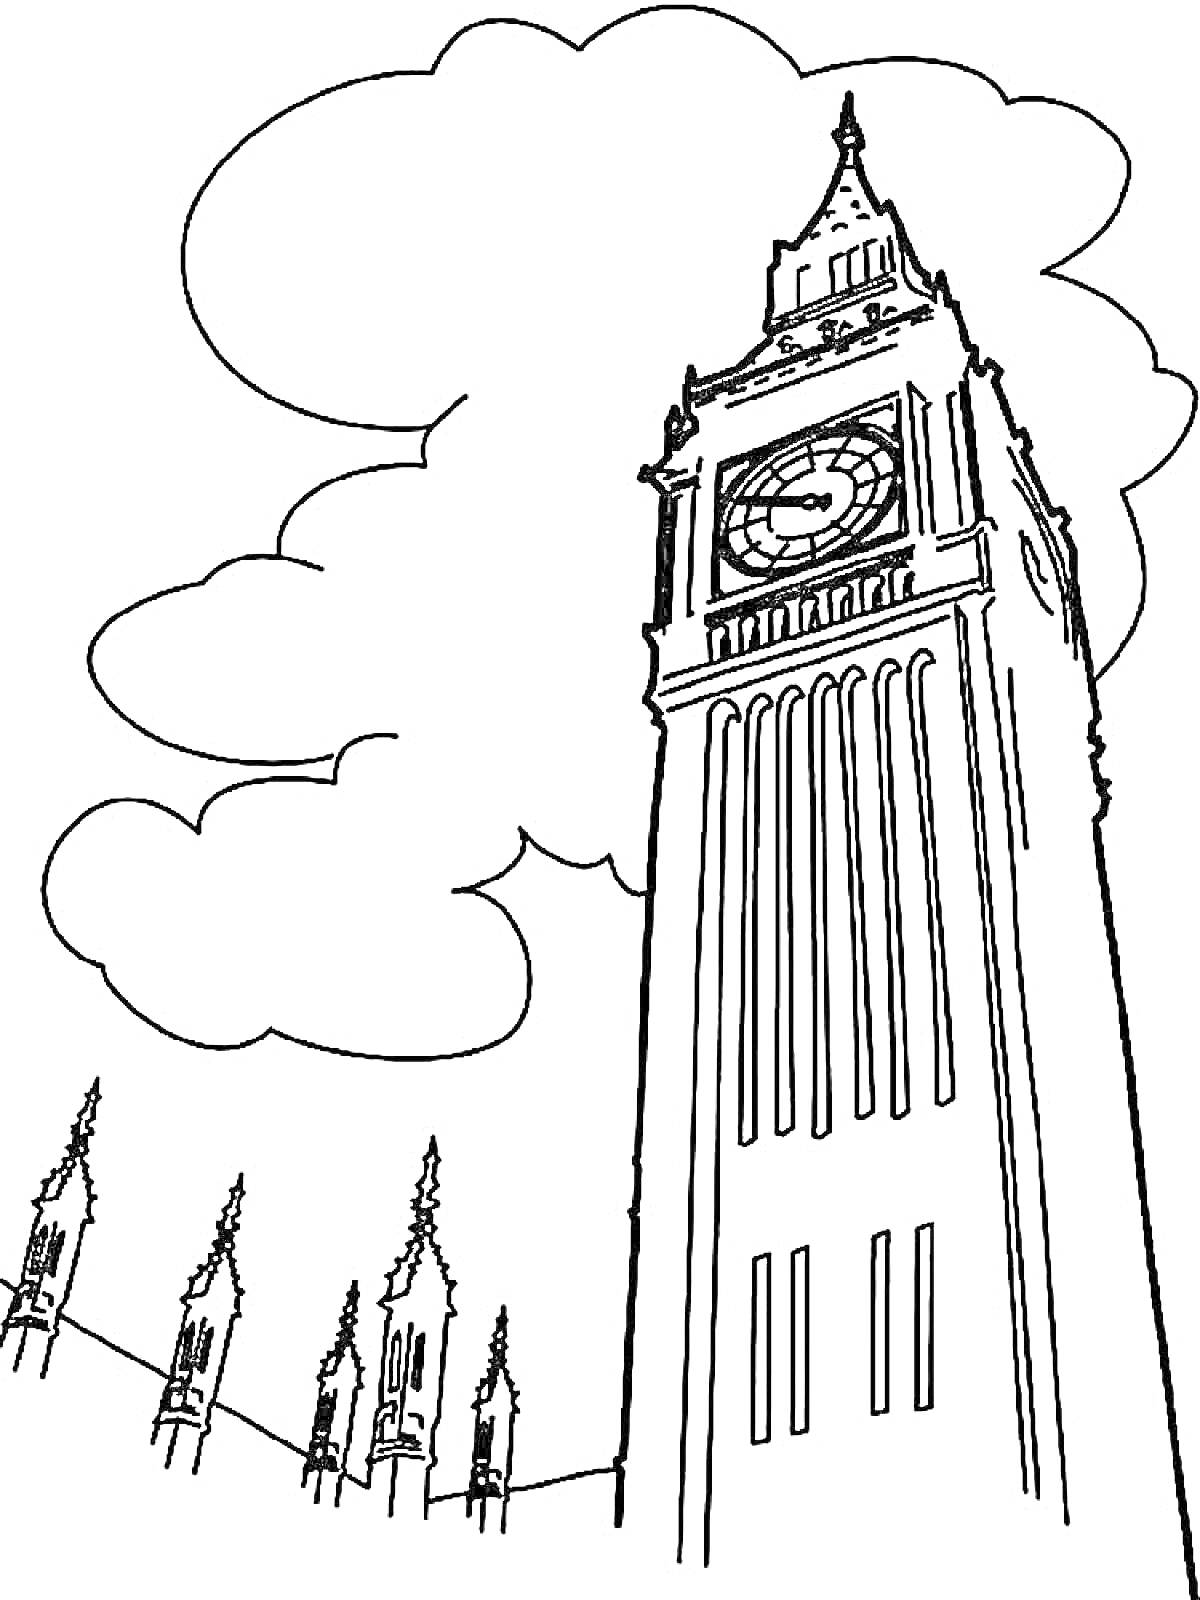 Раскраска Биг Бен с облаками и шпилями Вестминстерского дворца